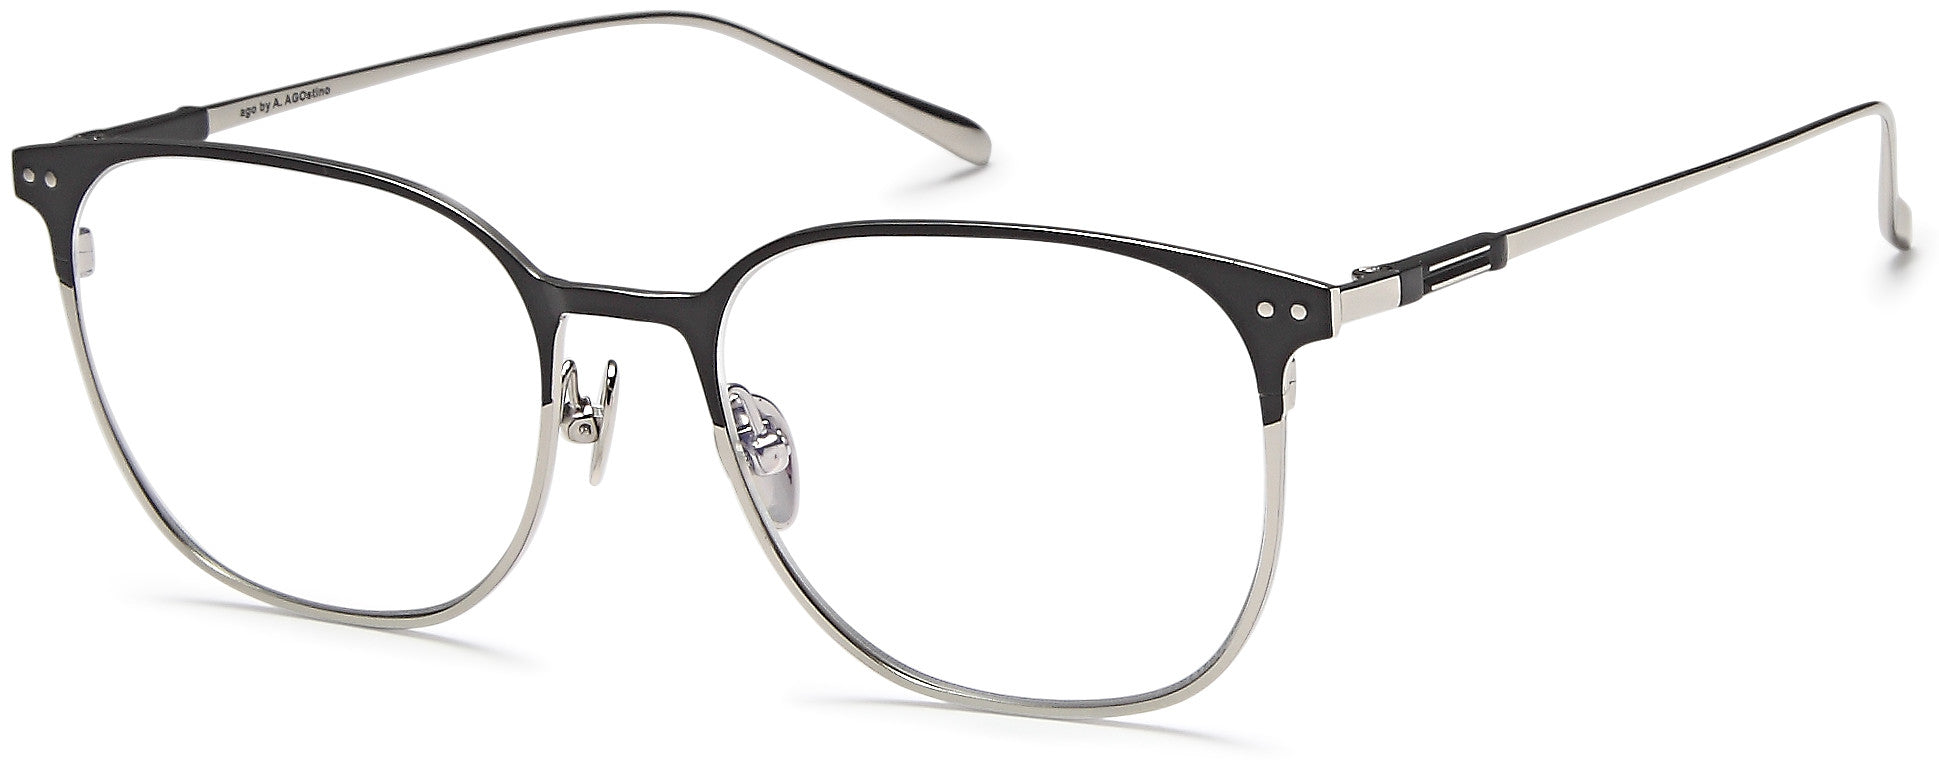 AGO Eyeglasses MF90001 - Go-Readers.com